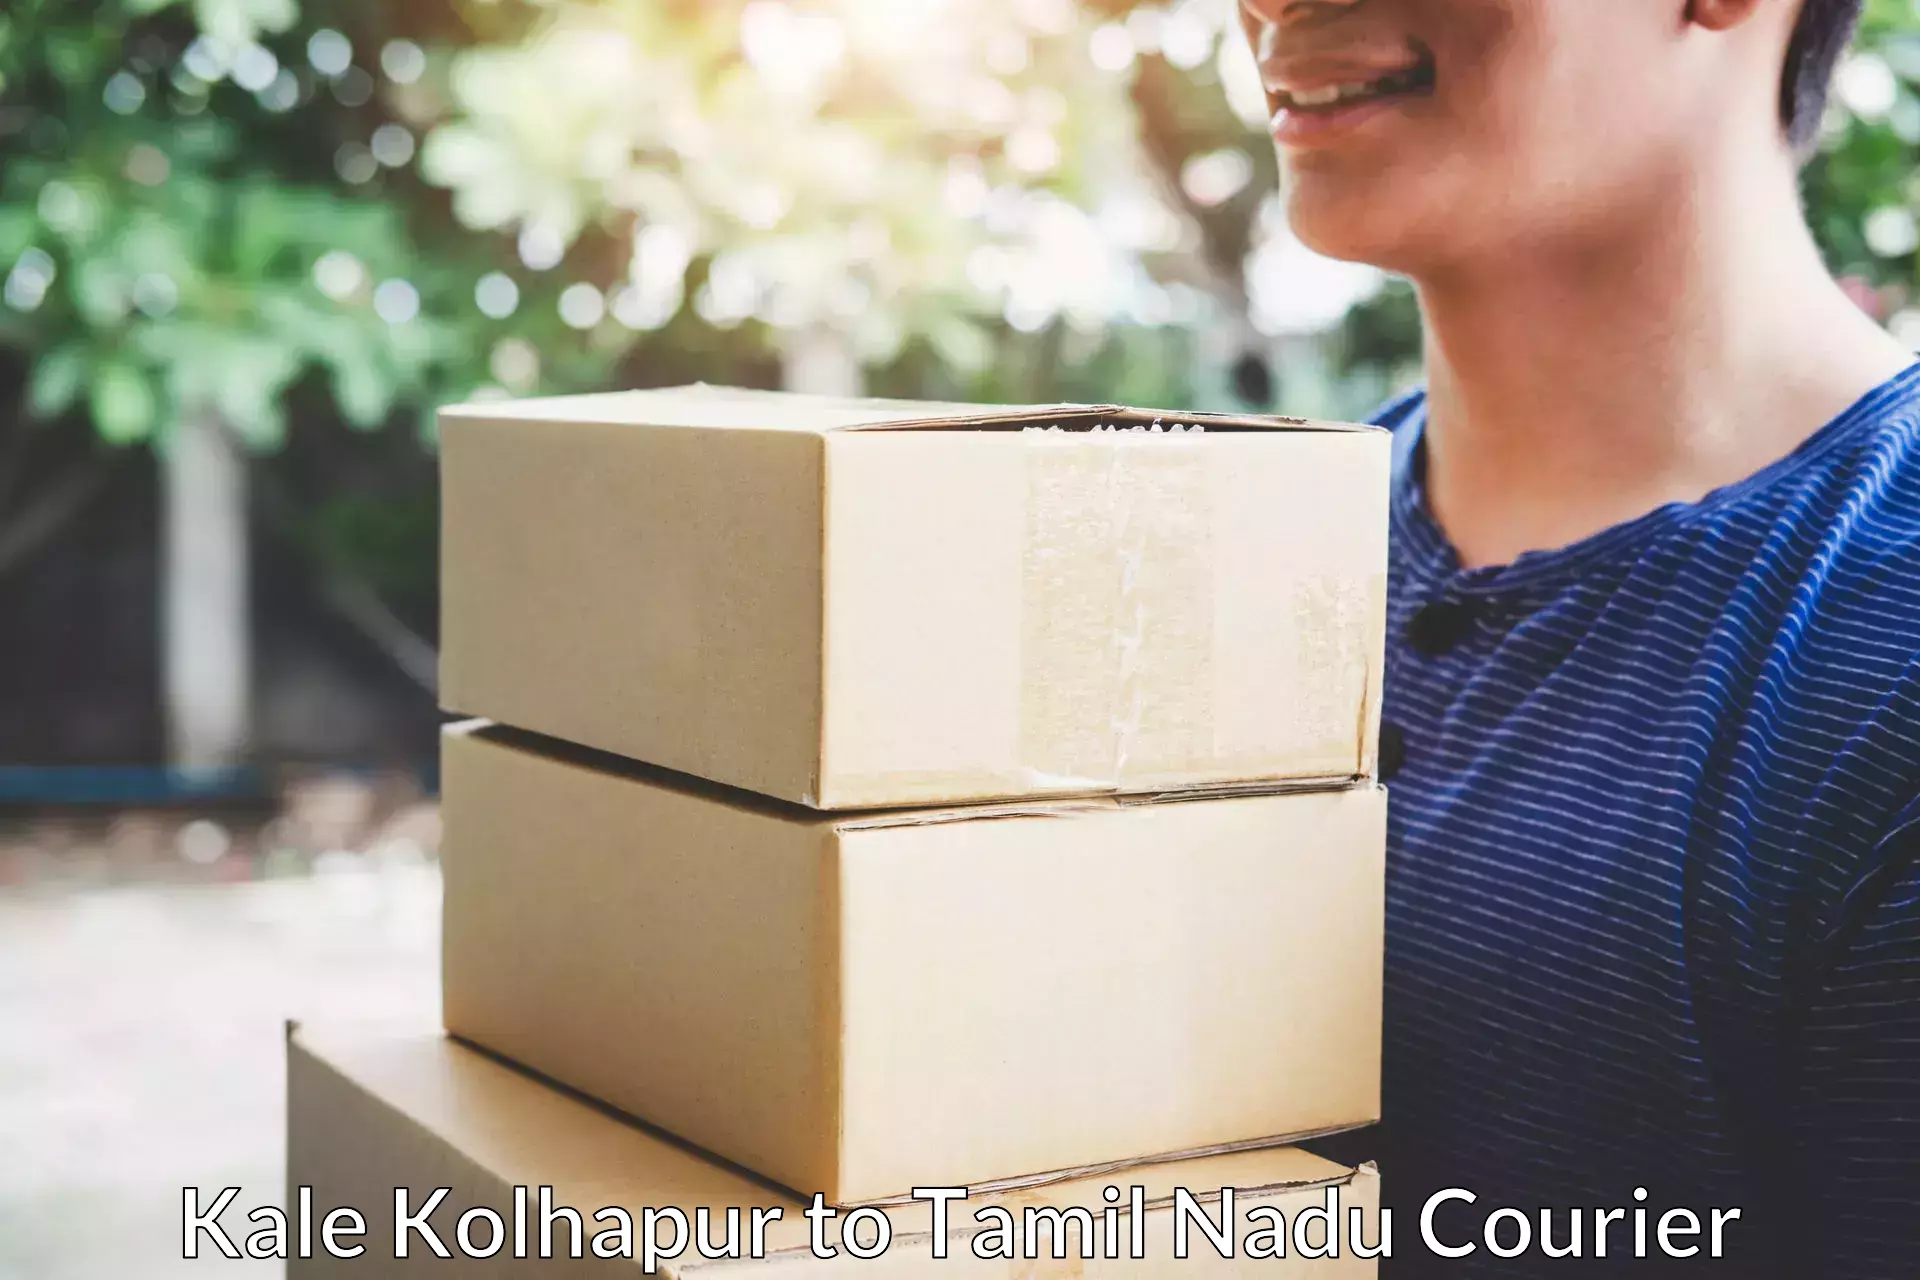 Furniture transport experts Kale Kolhapur to St Thomas Mount